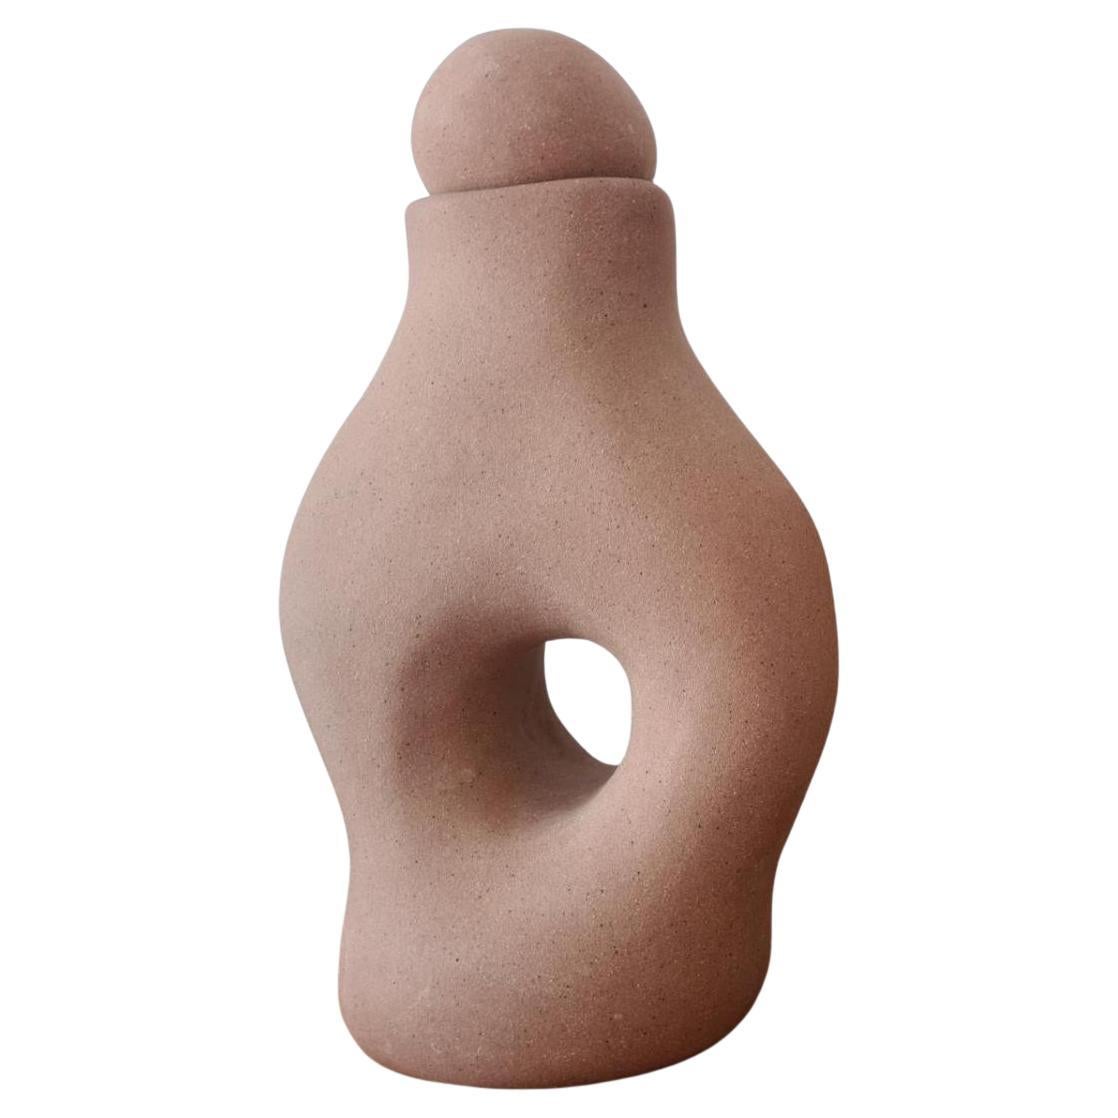 Vase/sculpture n°5 - Hybrids series For Sale